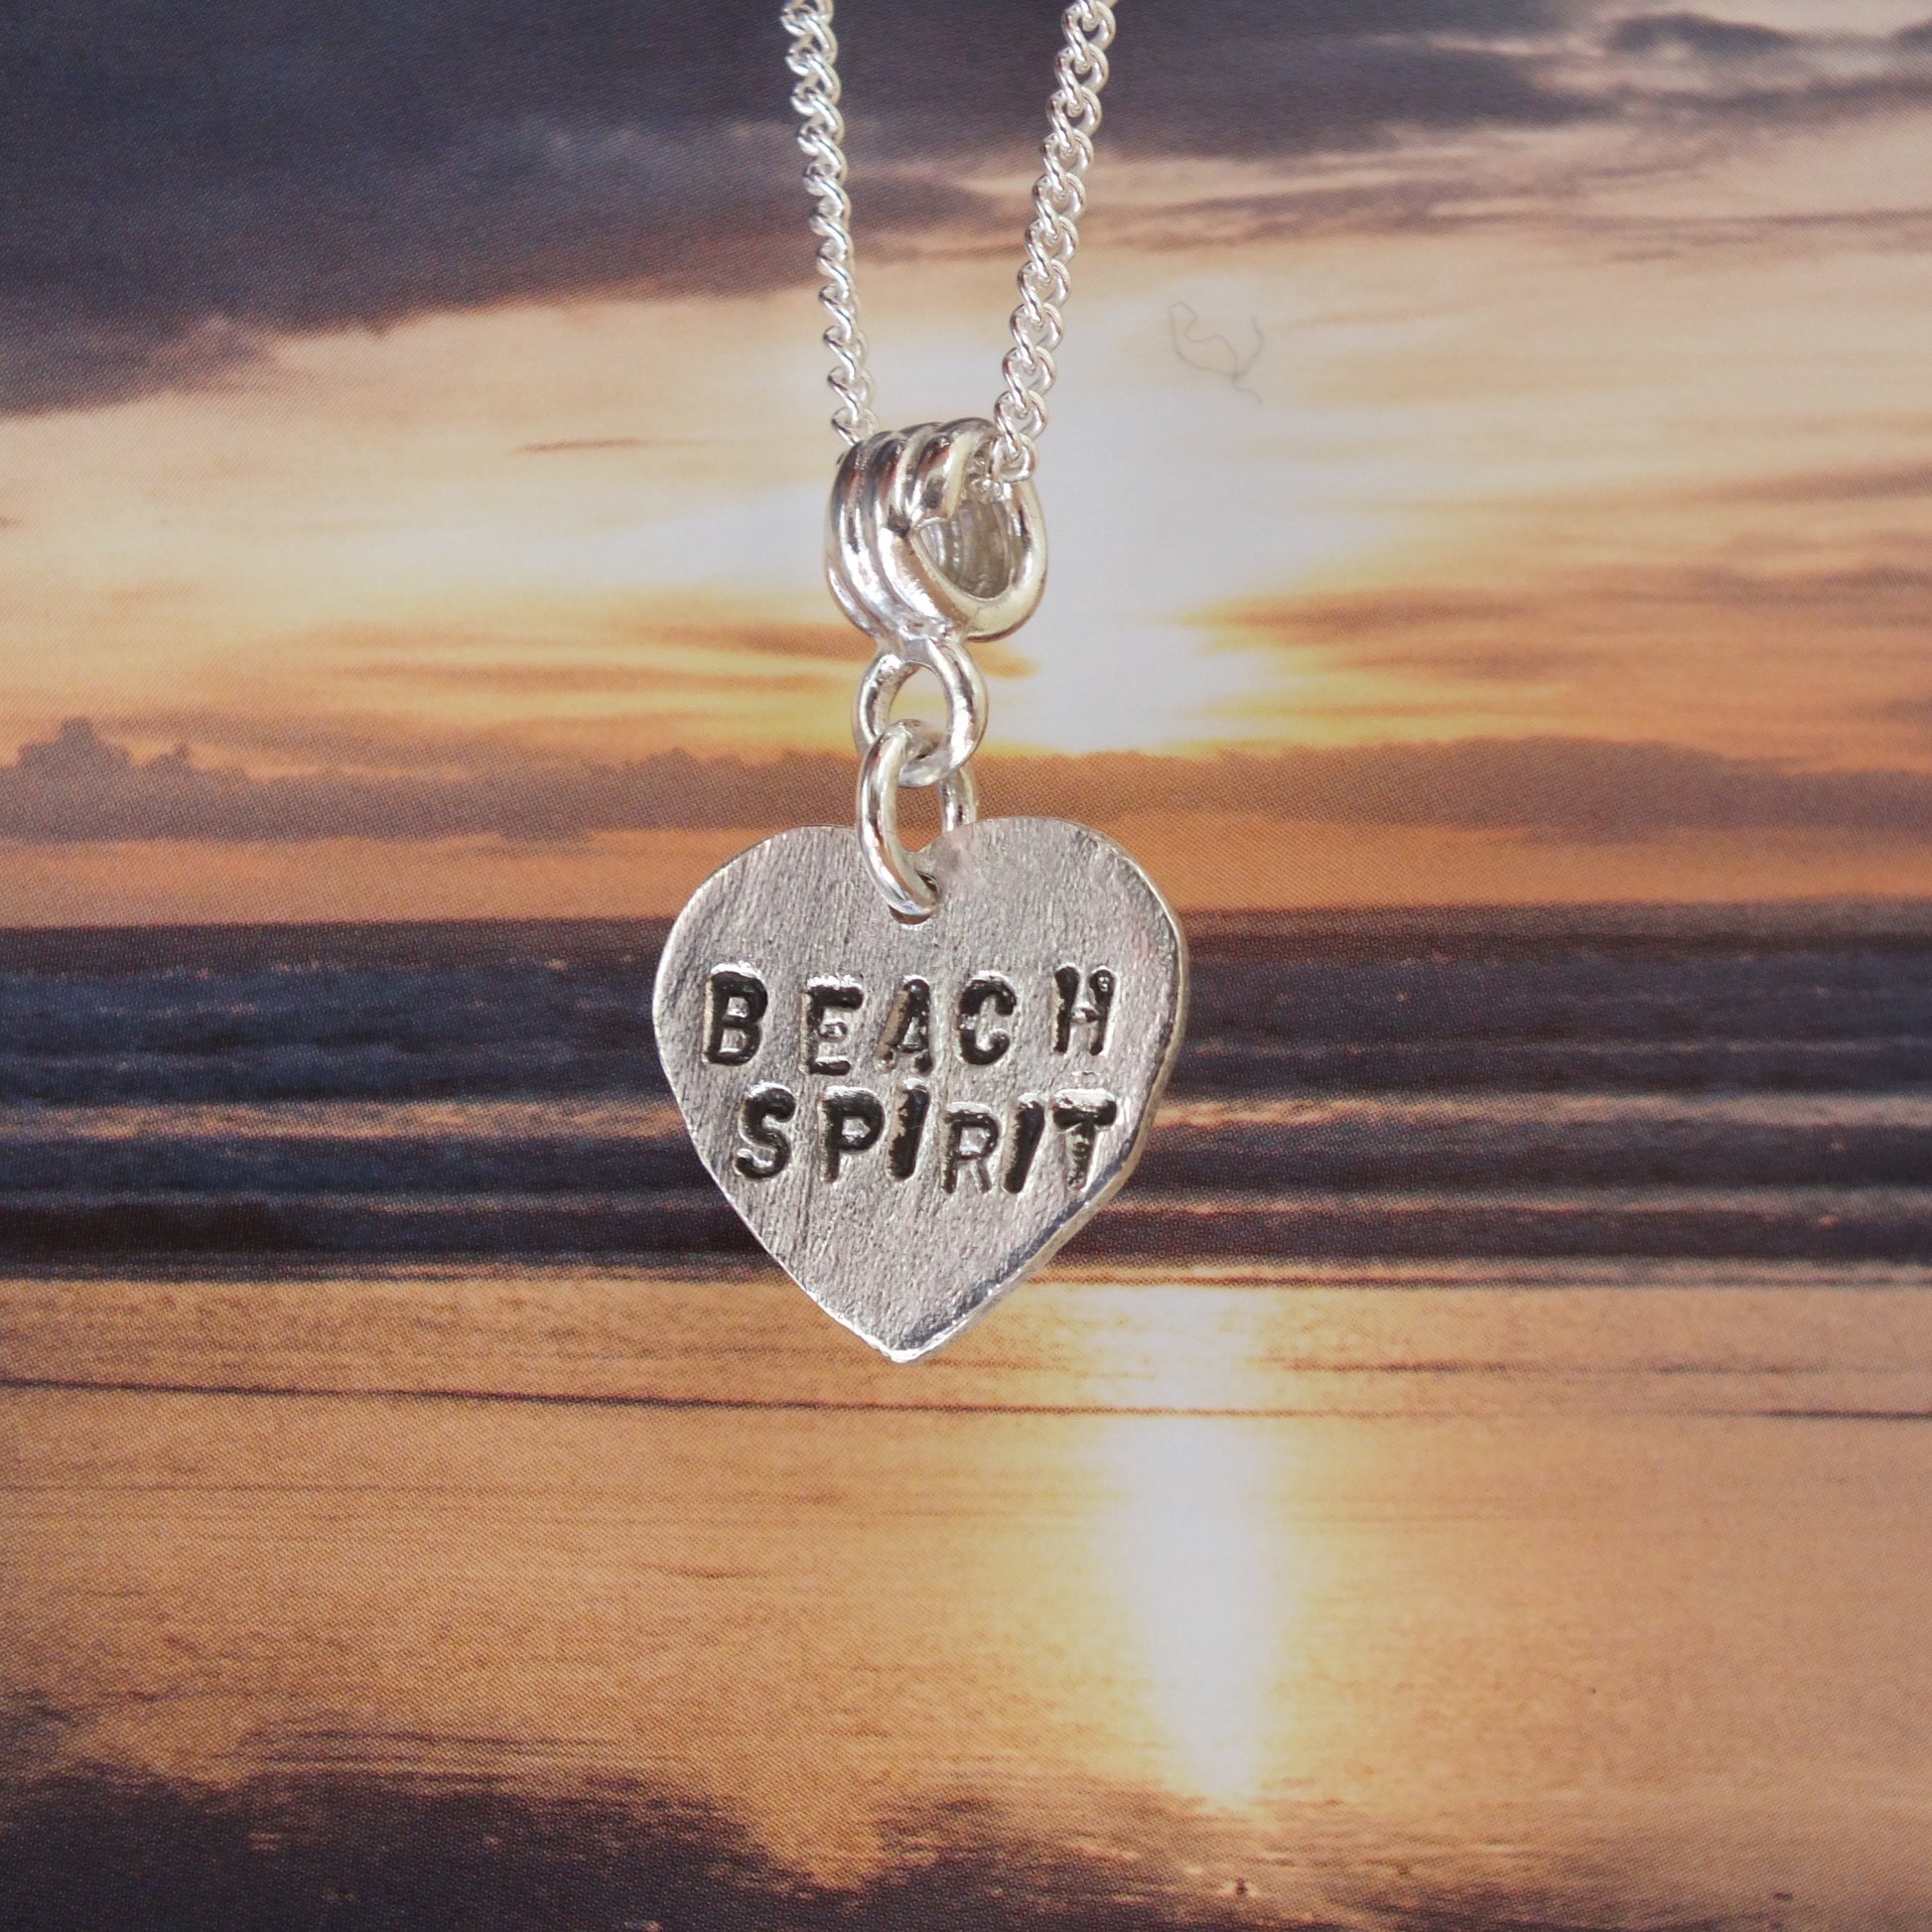 Beach spirit necklace